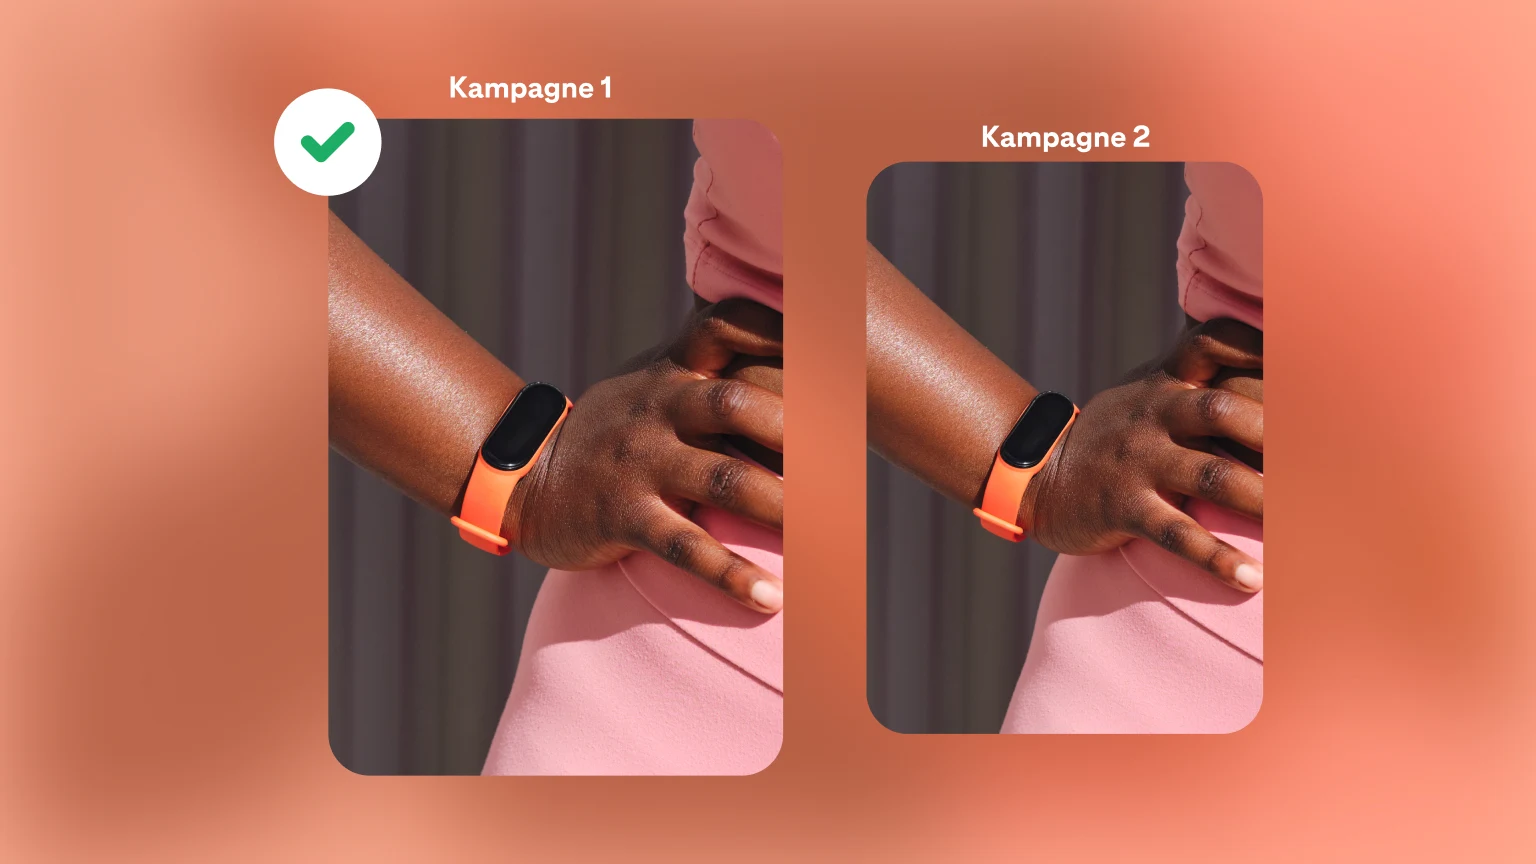 Zwei Kampagnen für Armbanduhren auf einem leuchtend orangen Hintergrund. Kampagne 1 ist durch ein grünes Häkchen als Gewinner markiert.